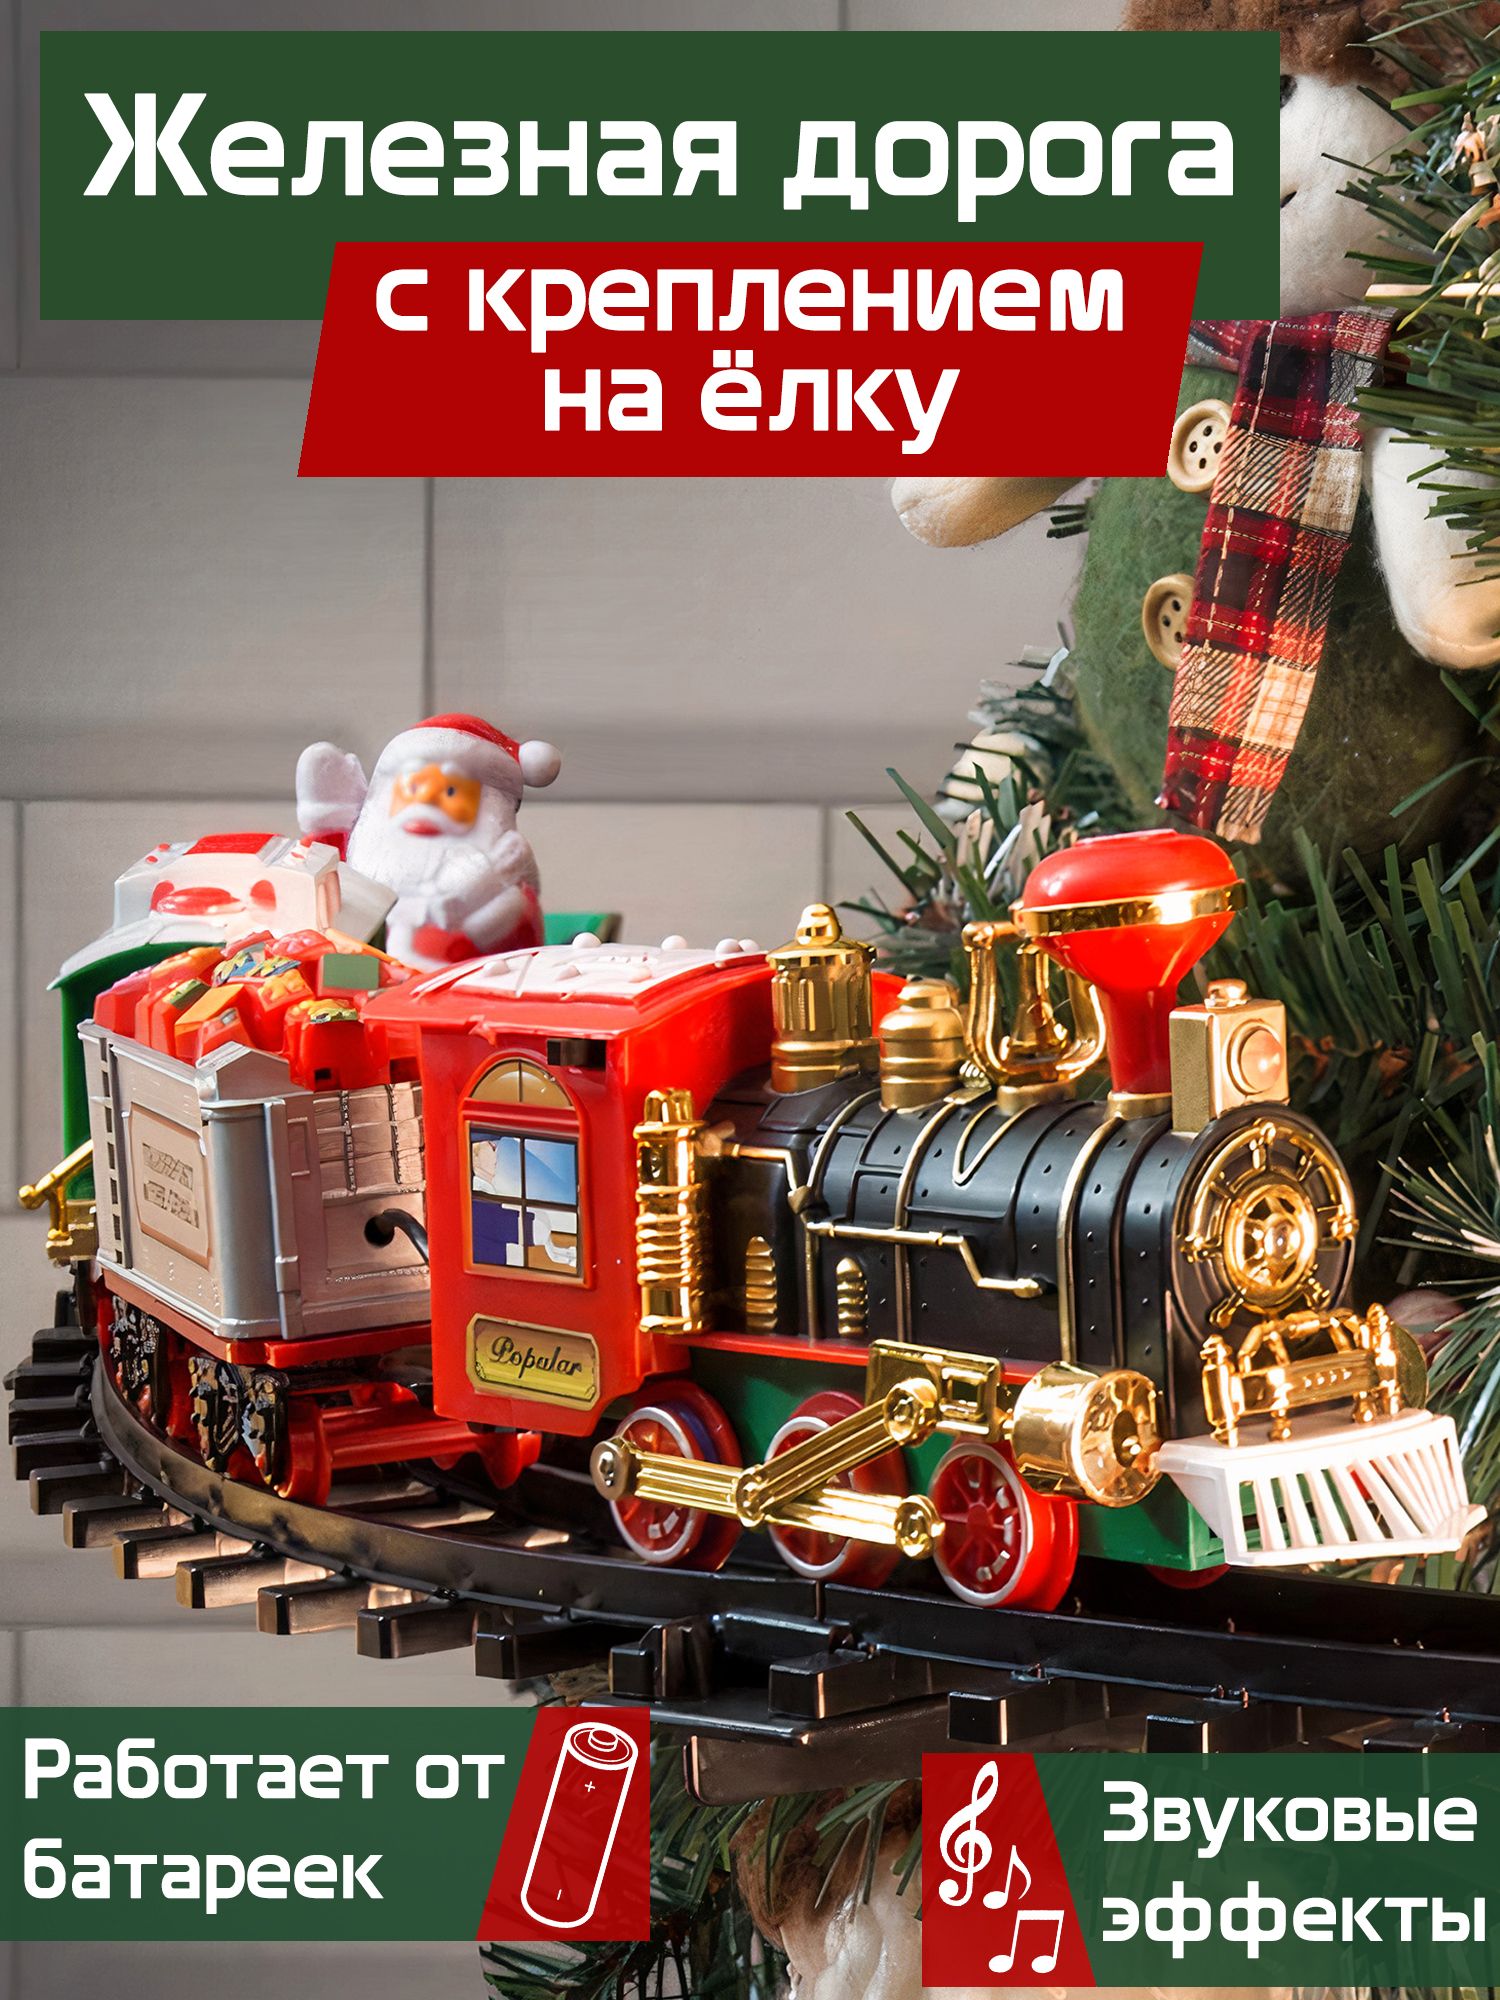 Новогоднее украшение фонарик 19 см поезд свет н/б